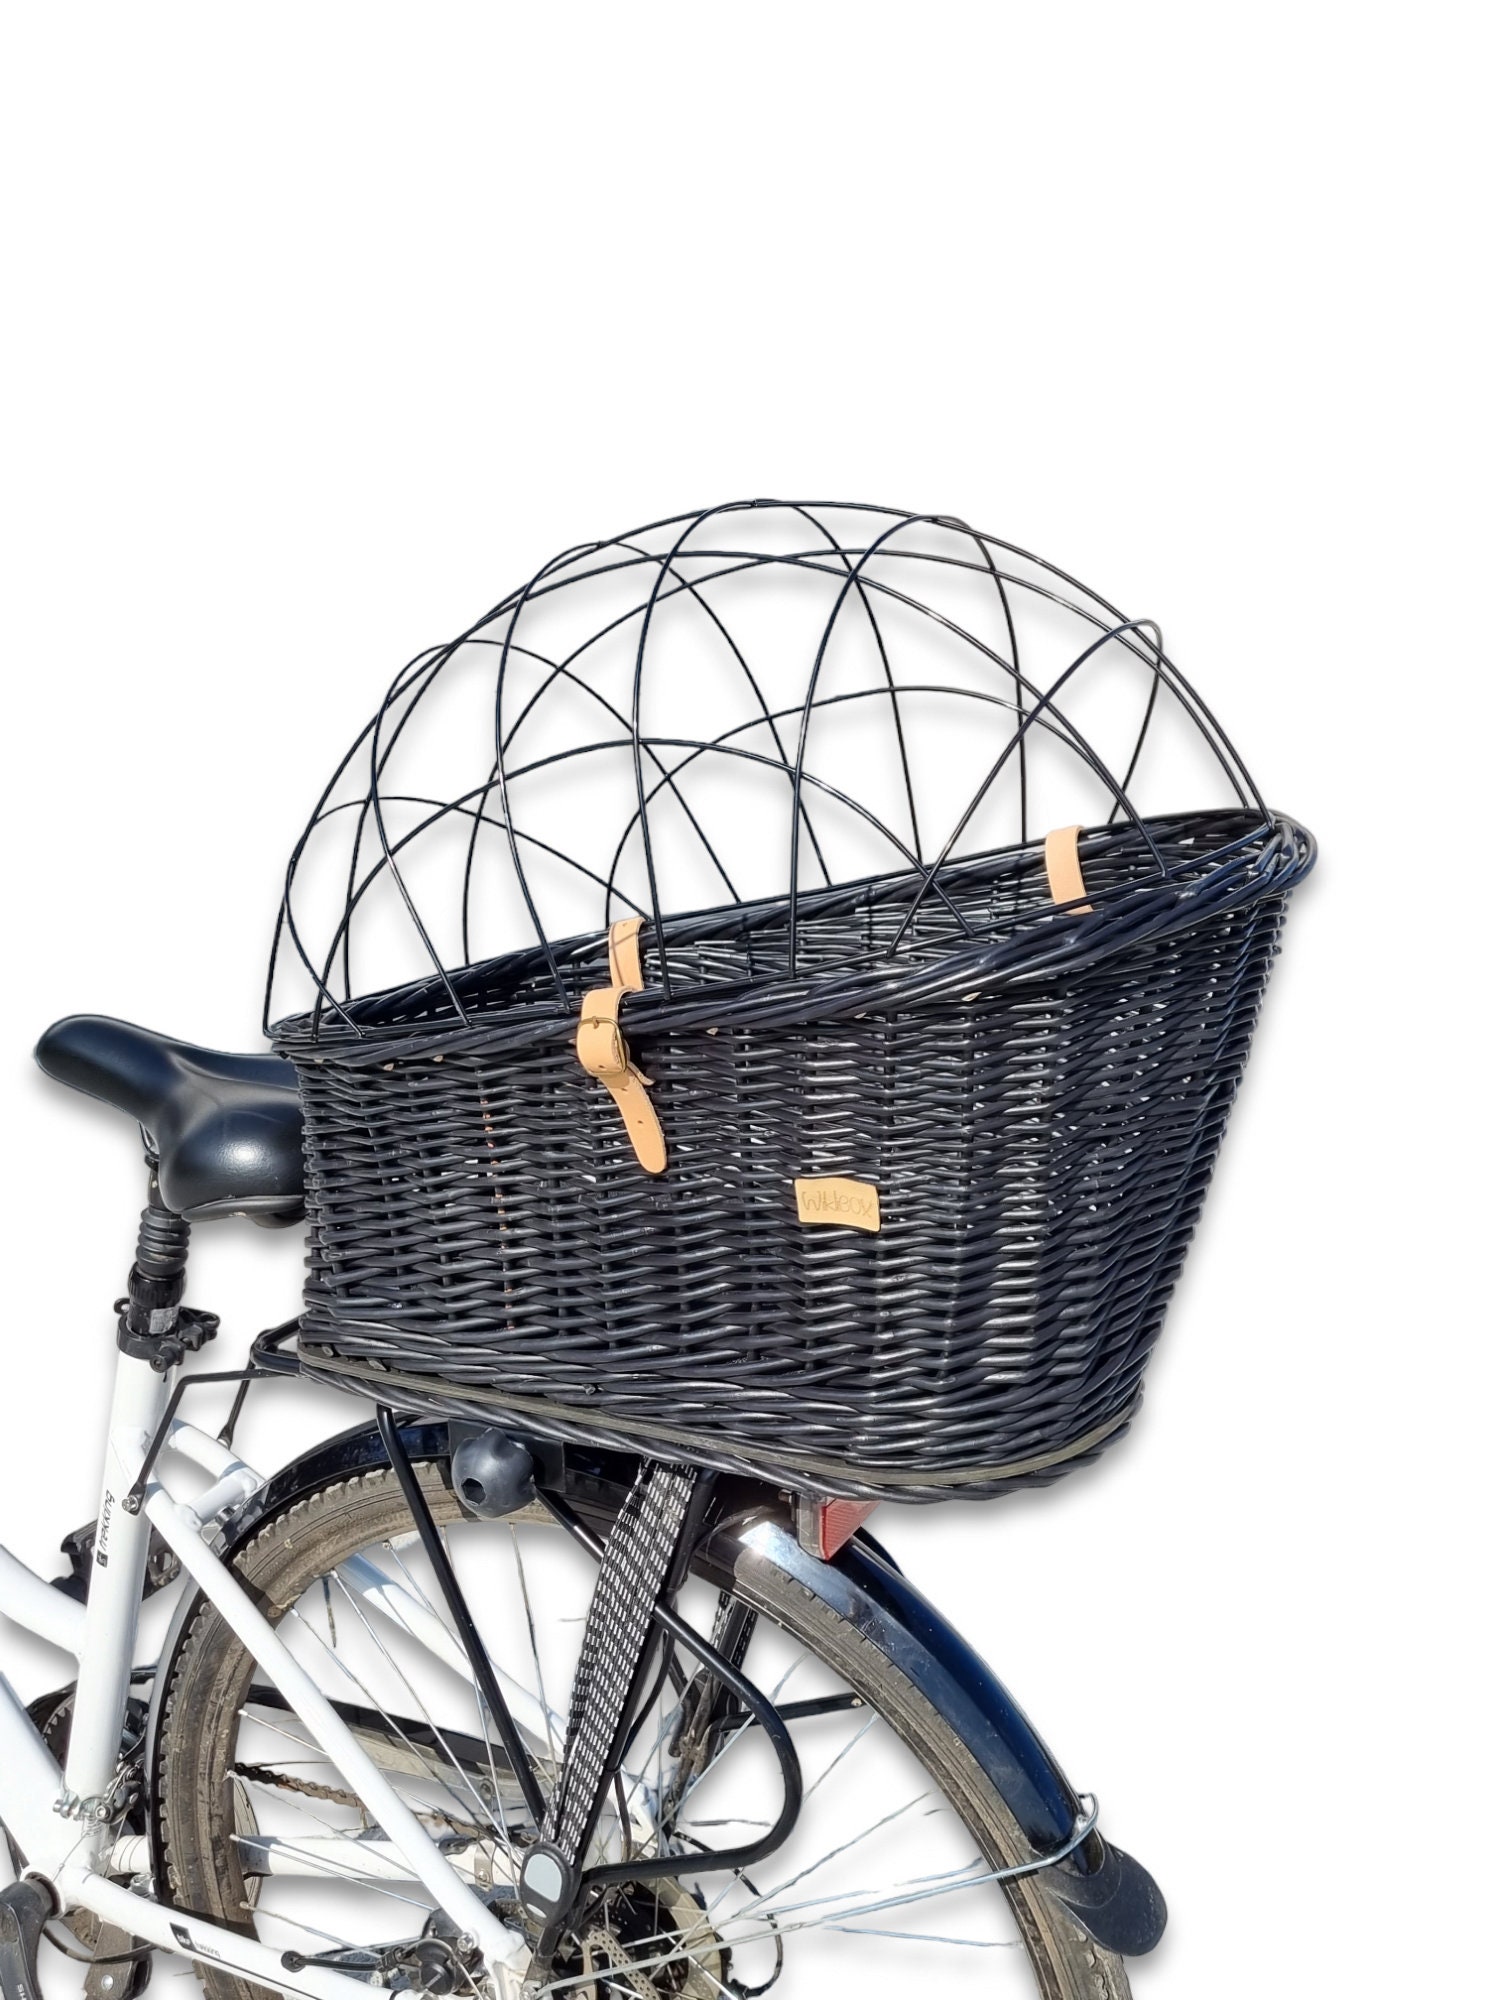 Cesto bici vimini Baule grande naturale con coperchio vendita on line  biciclette